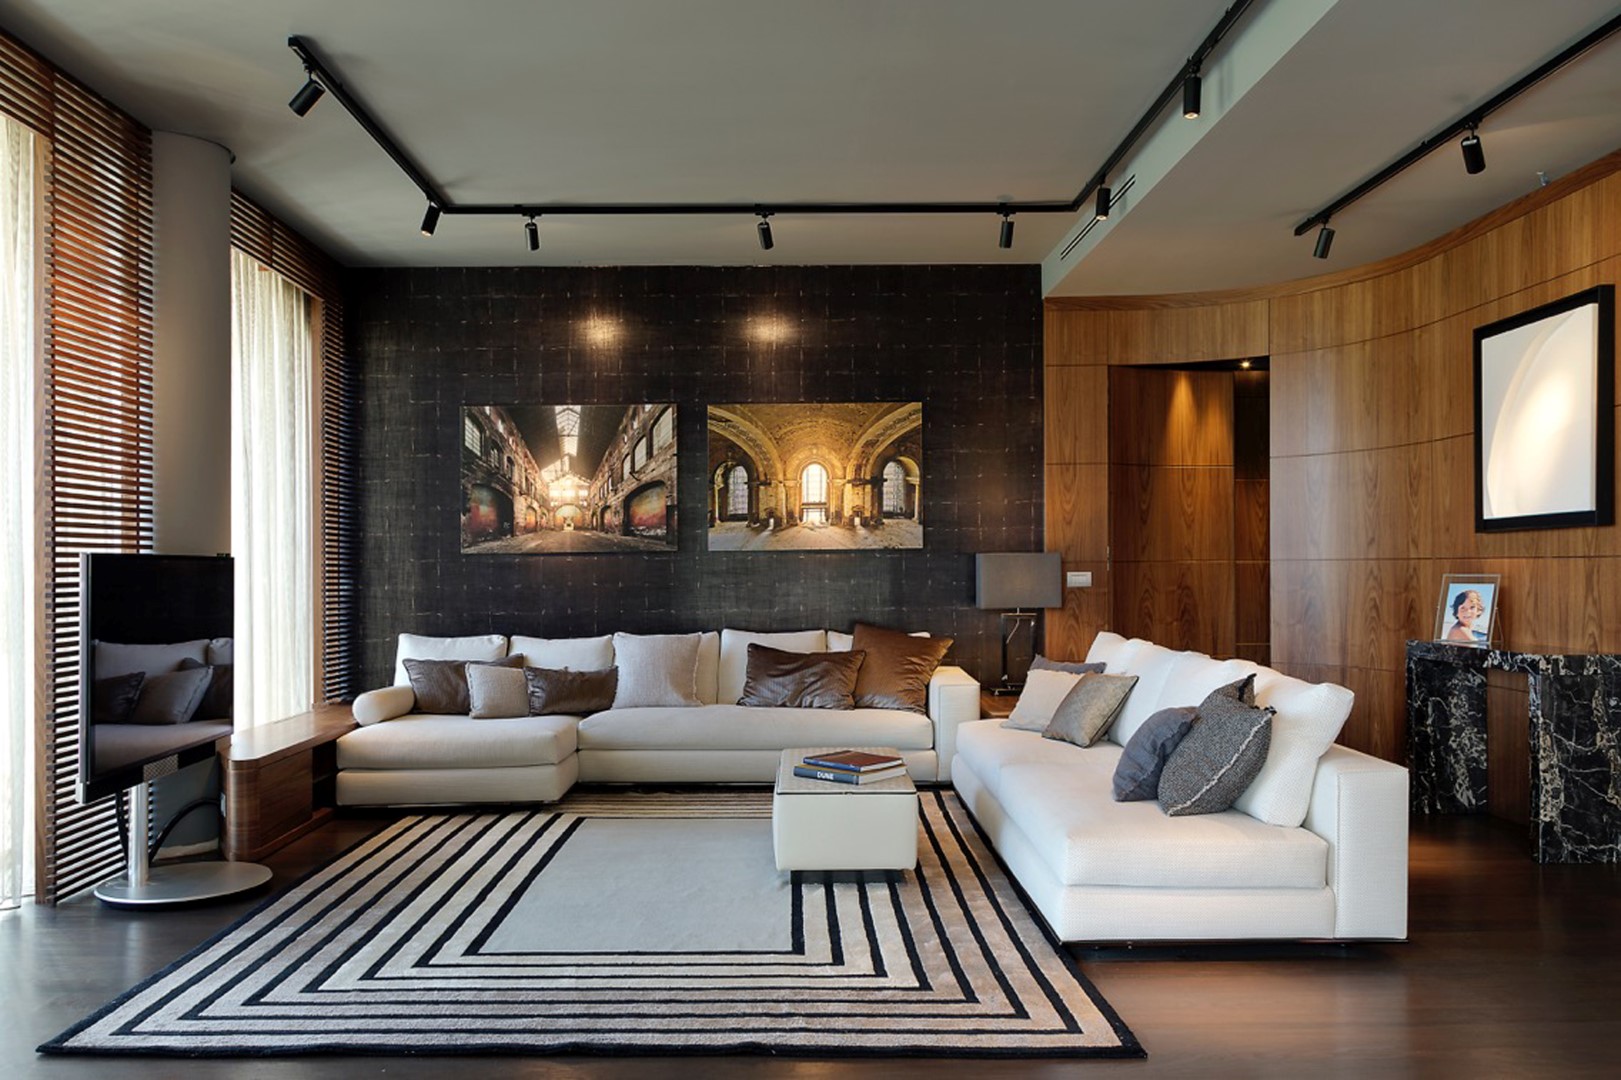 City Life Zaha Hadid: Illulian veste gli interni di un prestigioso appartamento